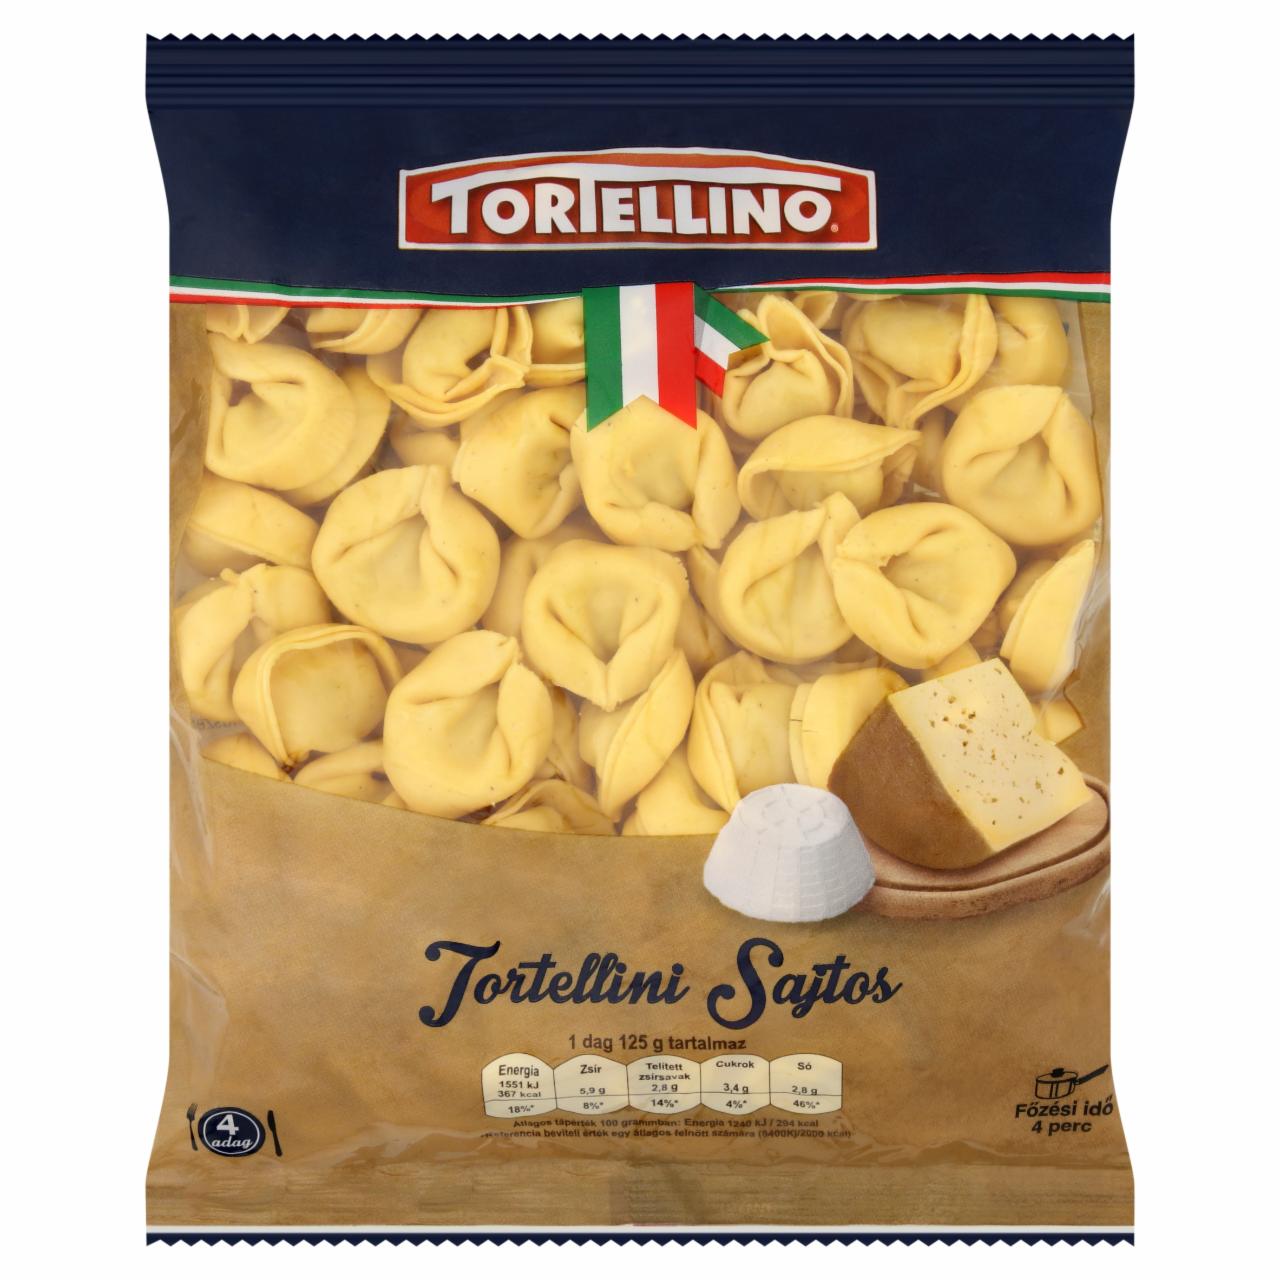 Képek - Tortellino Tortellini sajtos friss tészta 500 g